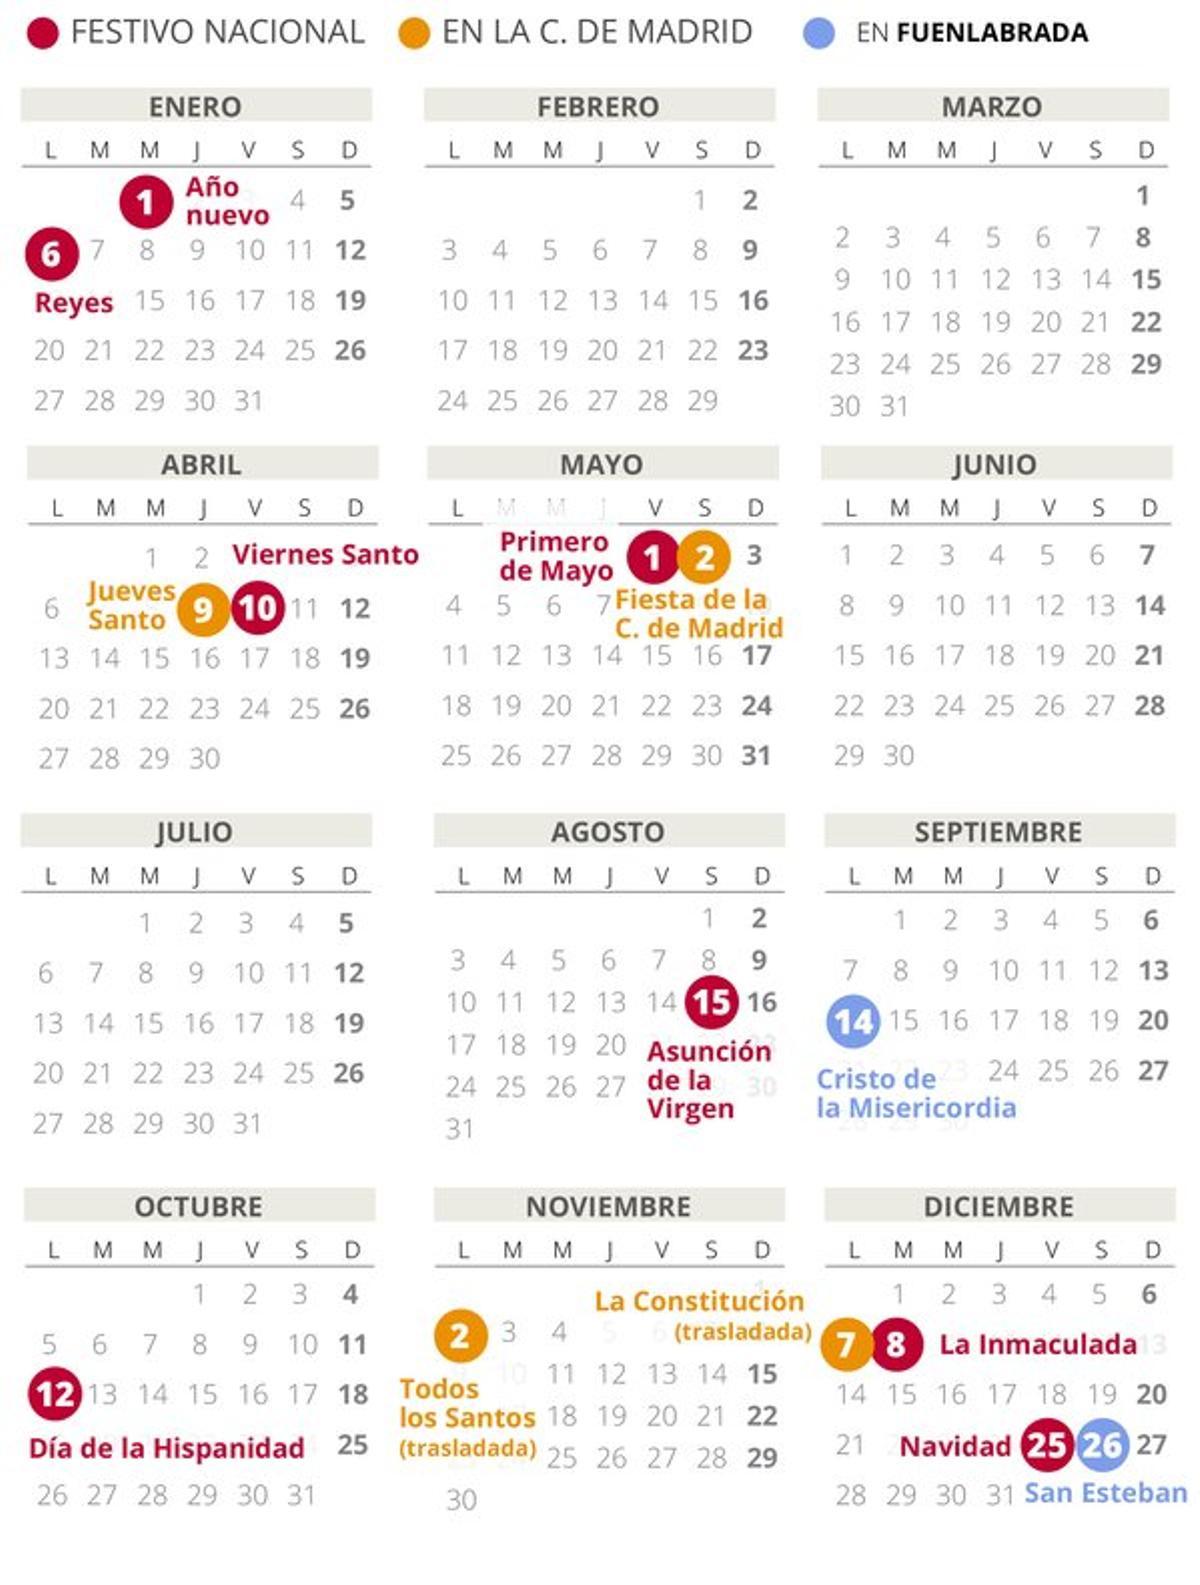 Calendario laboral de Fuenlabrada del 2020.